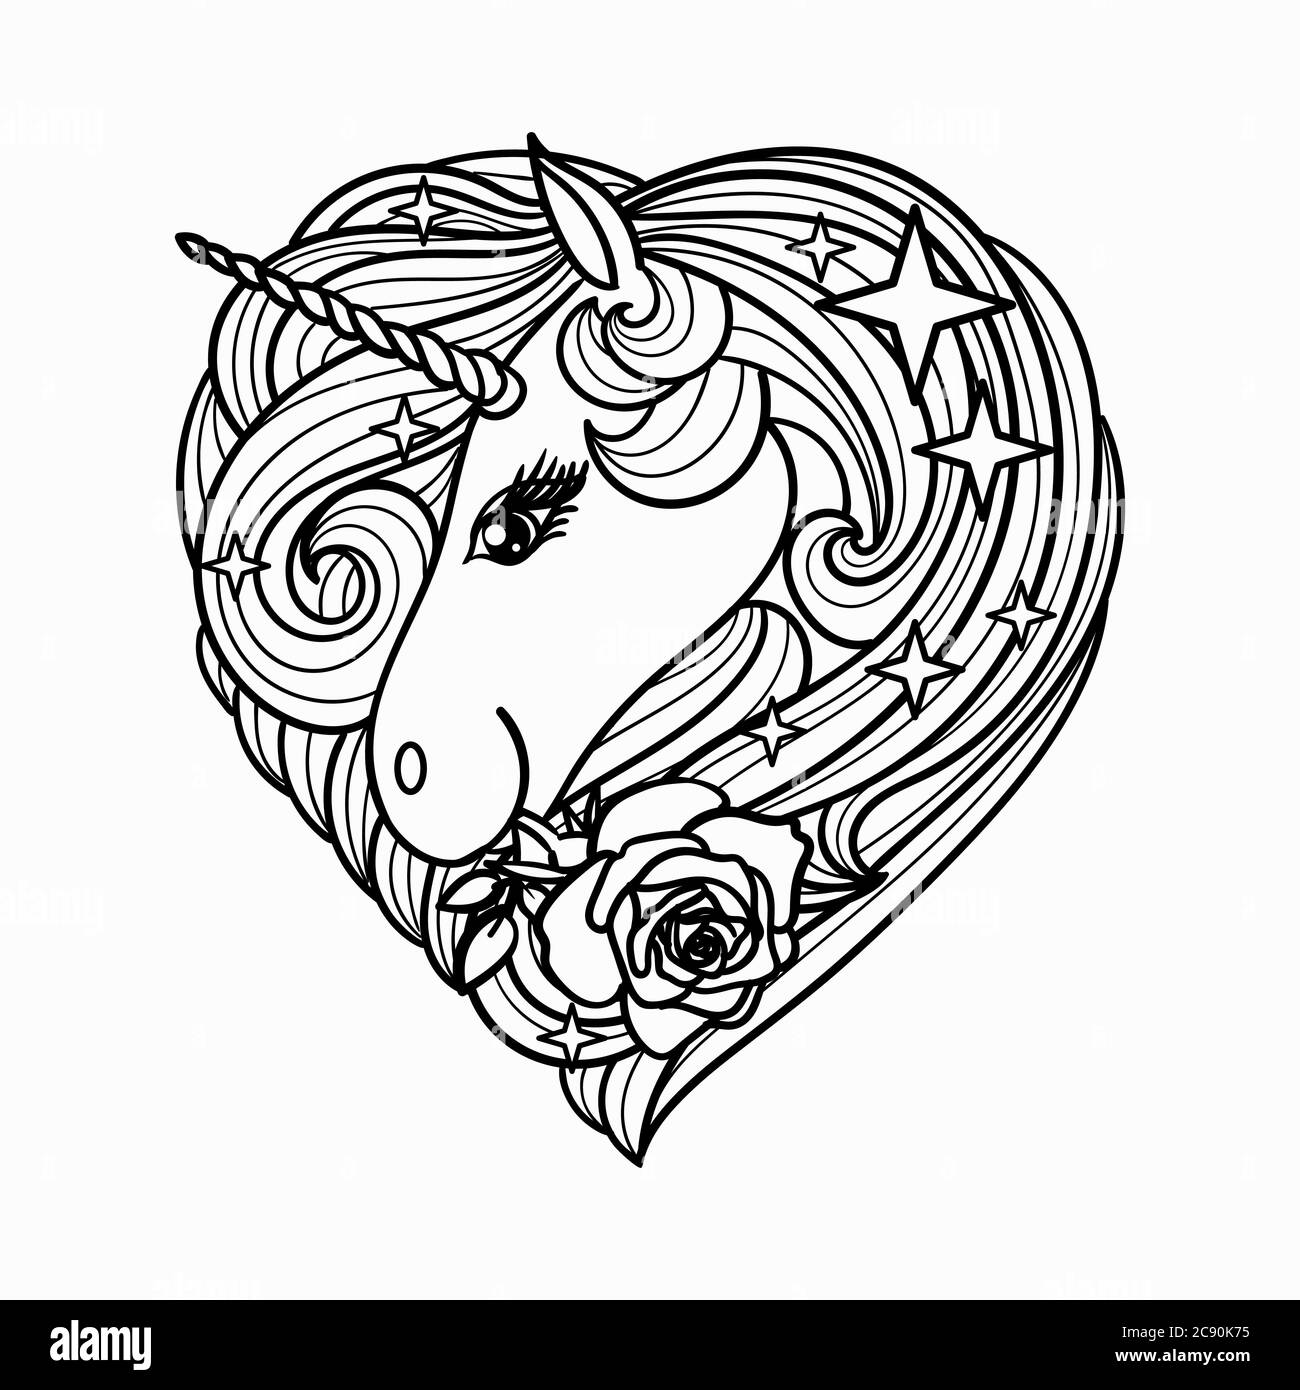 Dibujos animados Unicornio con una rosa. Estilizada en forma de corazón. Ilustración de línea dibujada a mano. Para el diseño de tatuajes, colorear, impresiones, pósters. Vector Ilustración del Vector